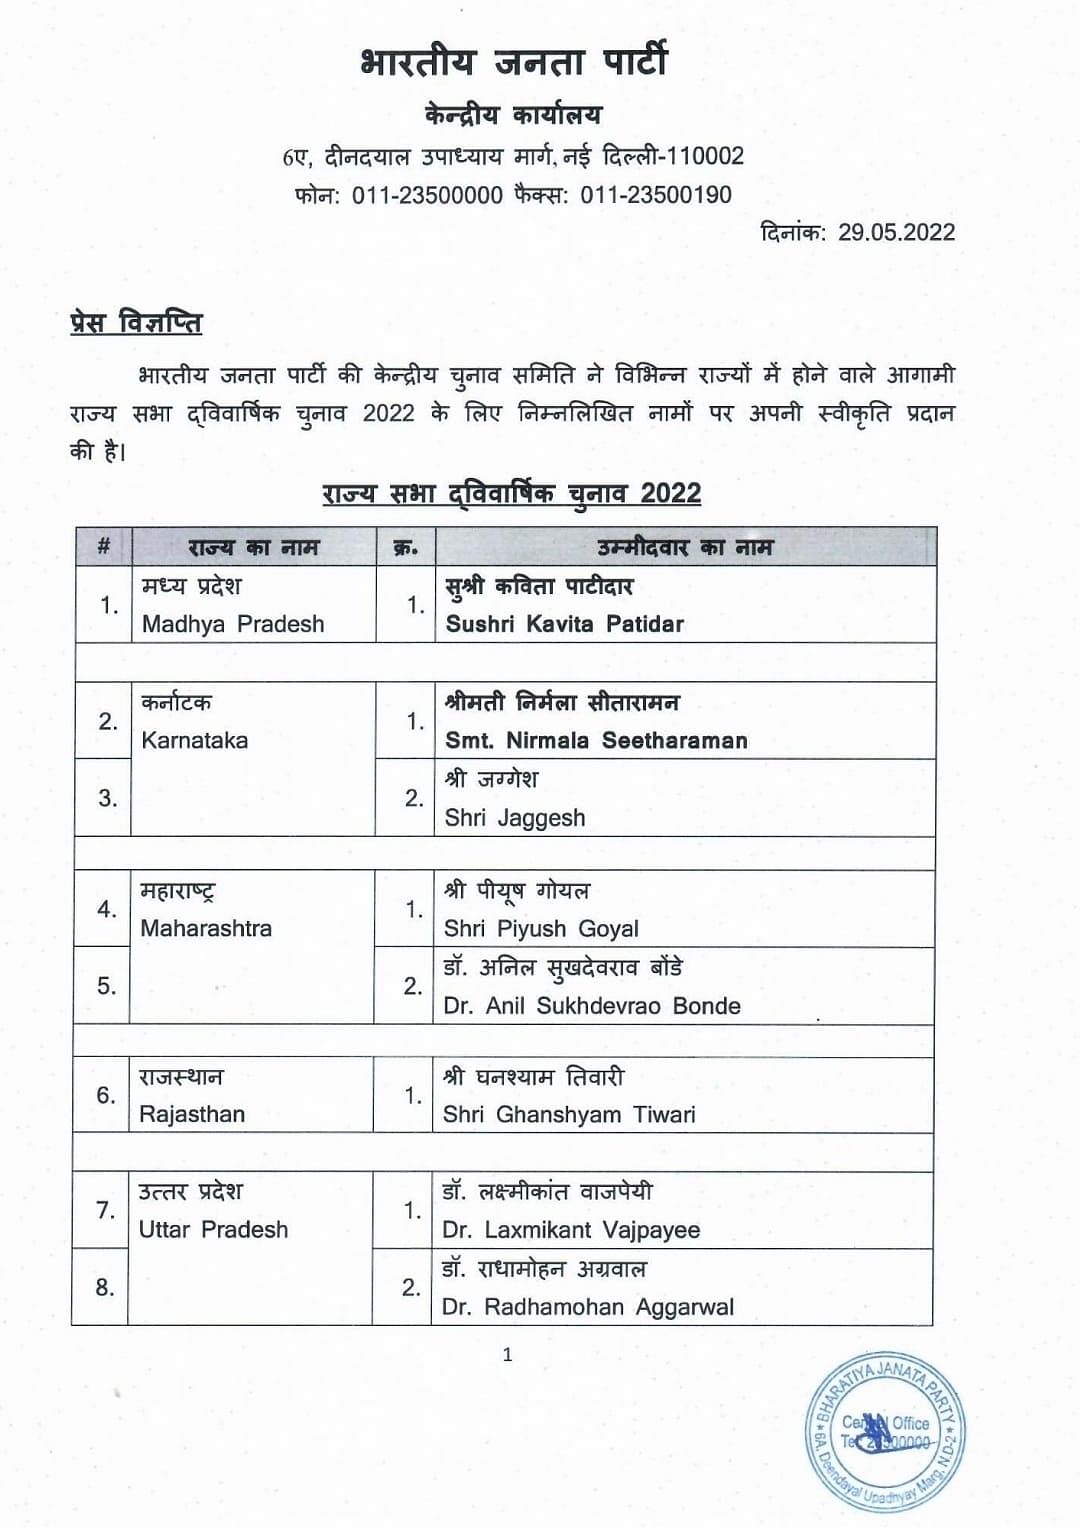 BJP Rajya Sabha candidate List: बिहार से सतीश चंद्र और शंभु शरण पटेल बीजेपी के लिए राज्यसभा के उम्मीदवार होंगे.